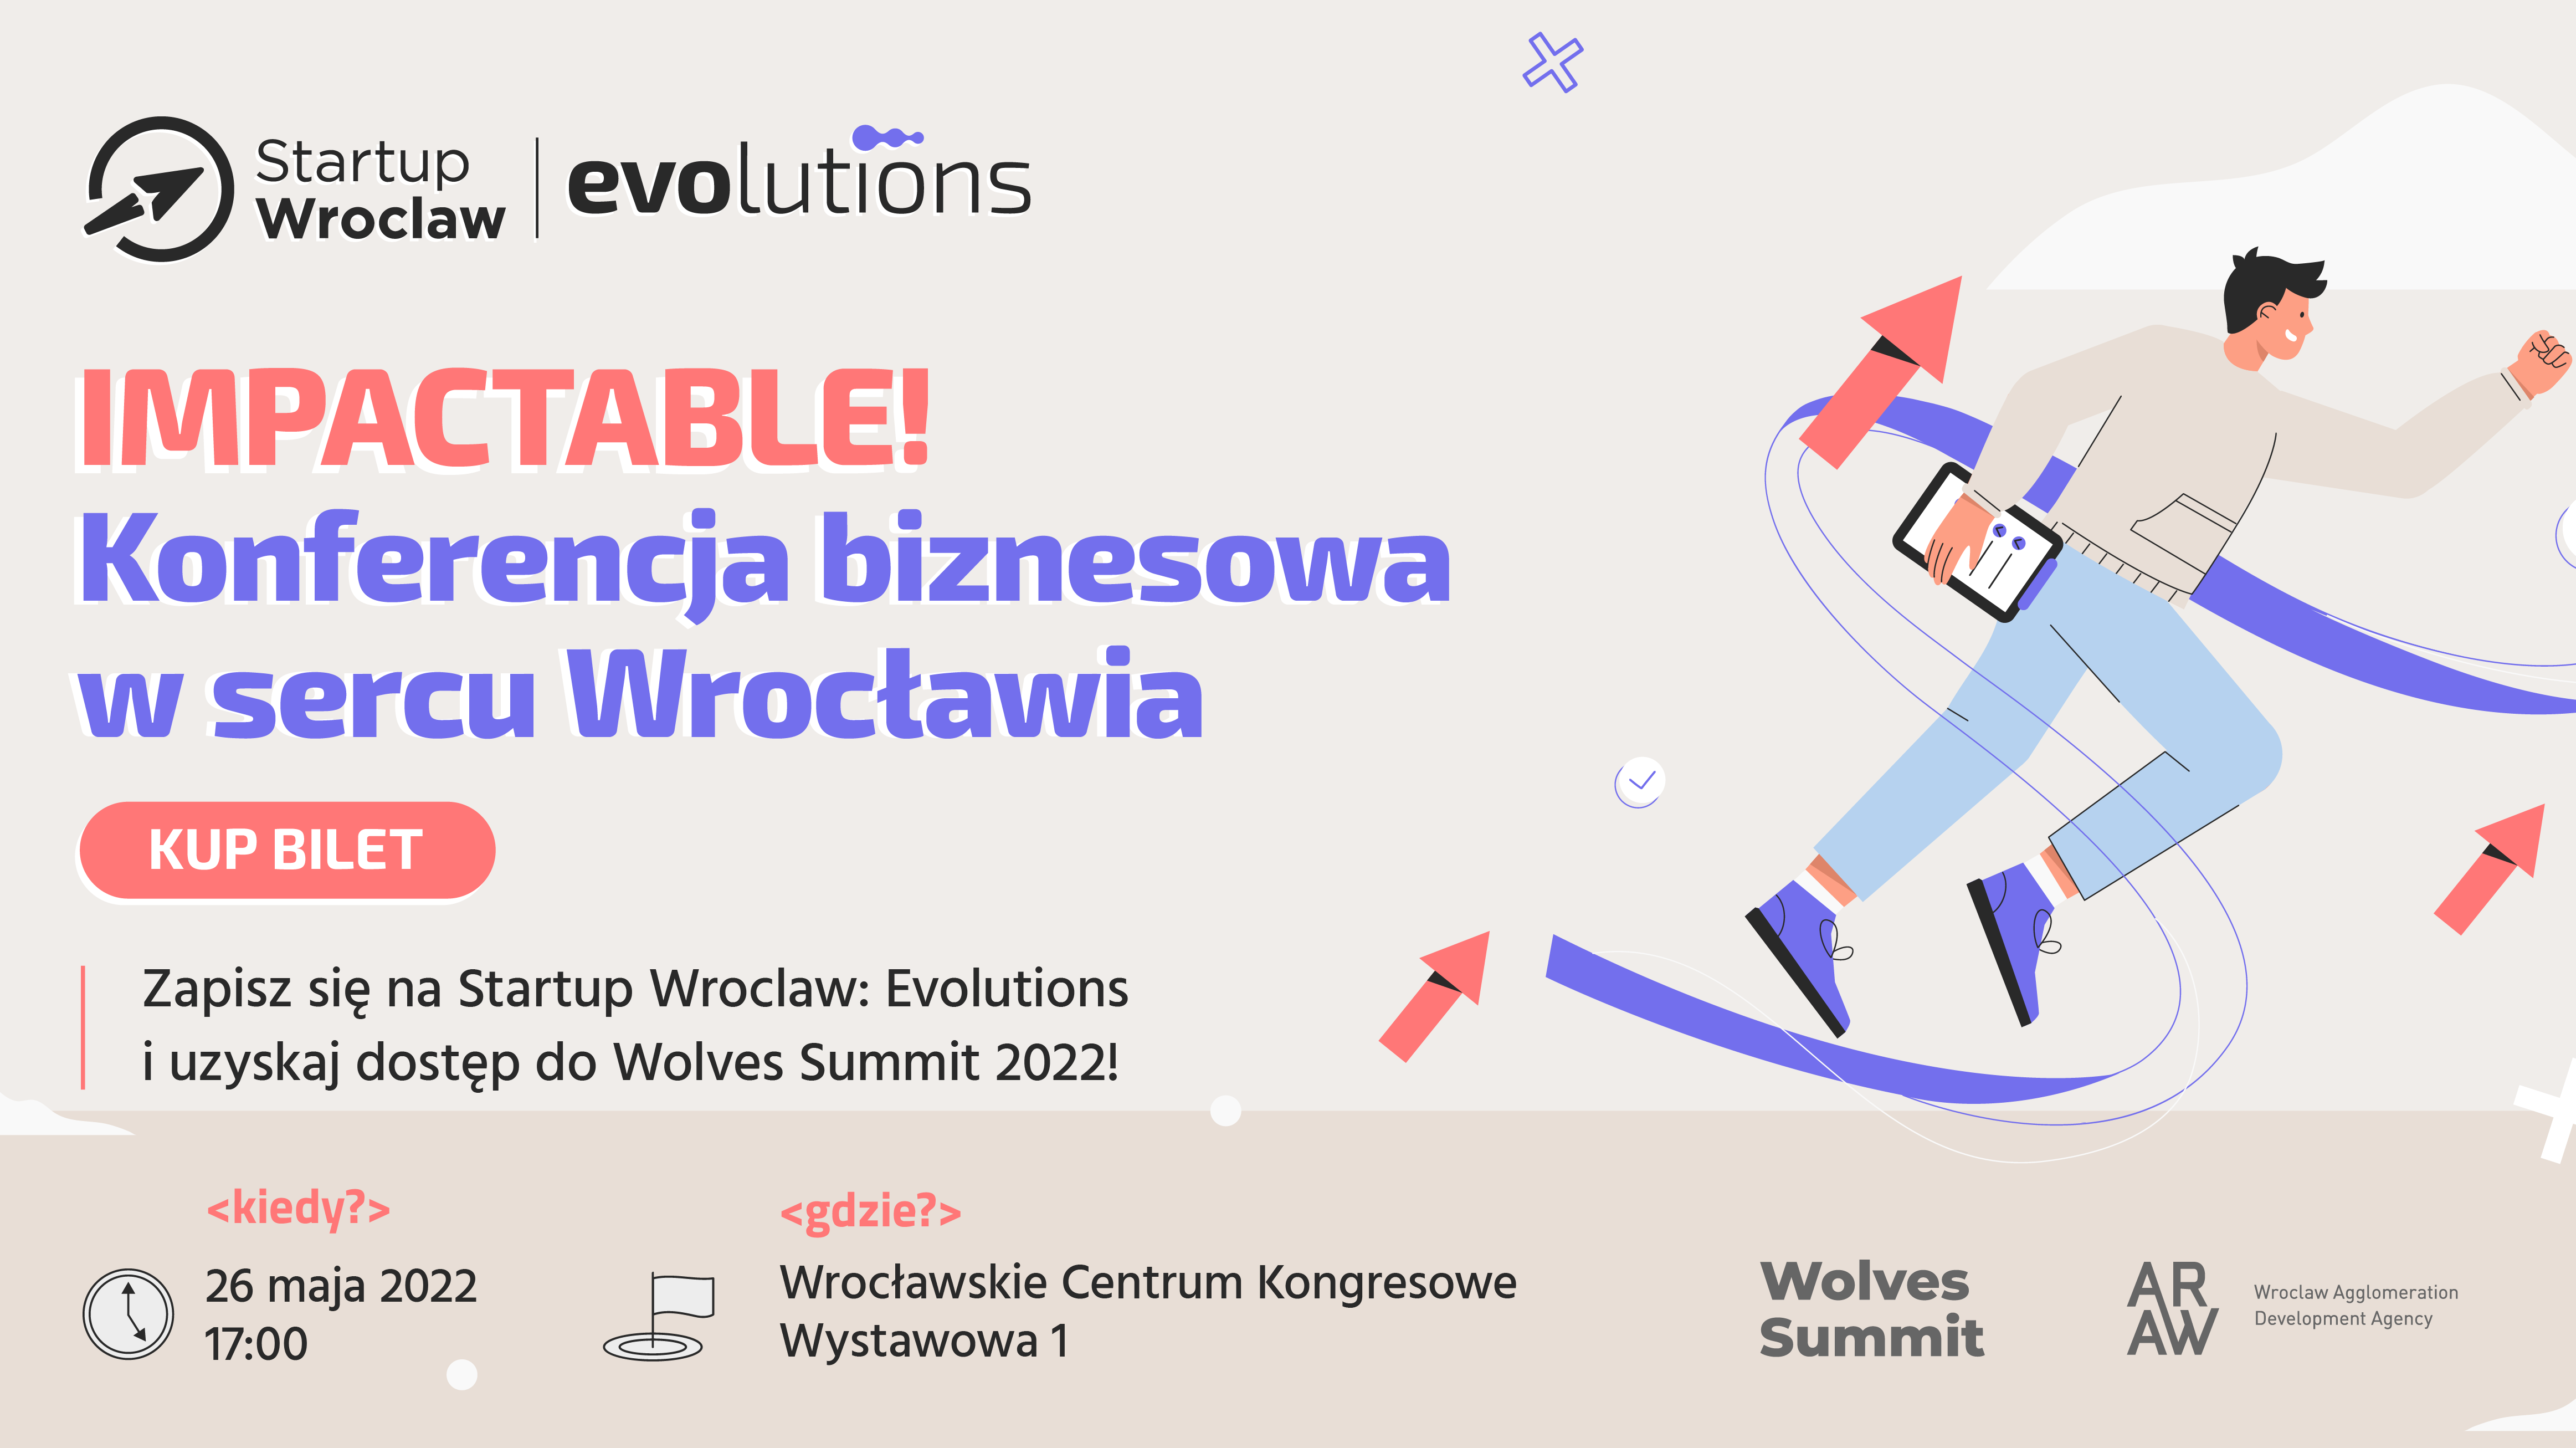 Startup Wroclaw: Evolutions. Konferencja biznesowa w sercu Wrocławia